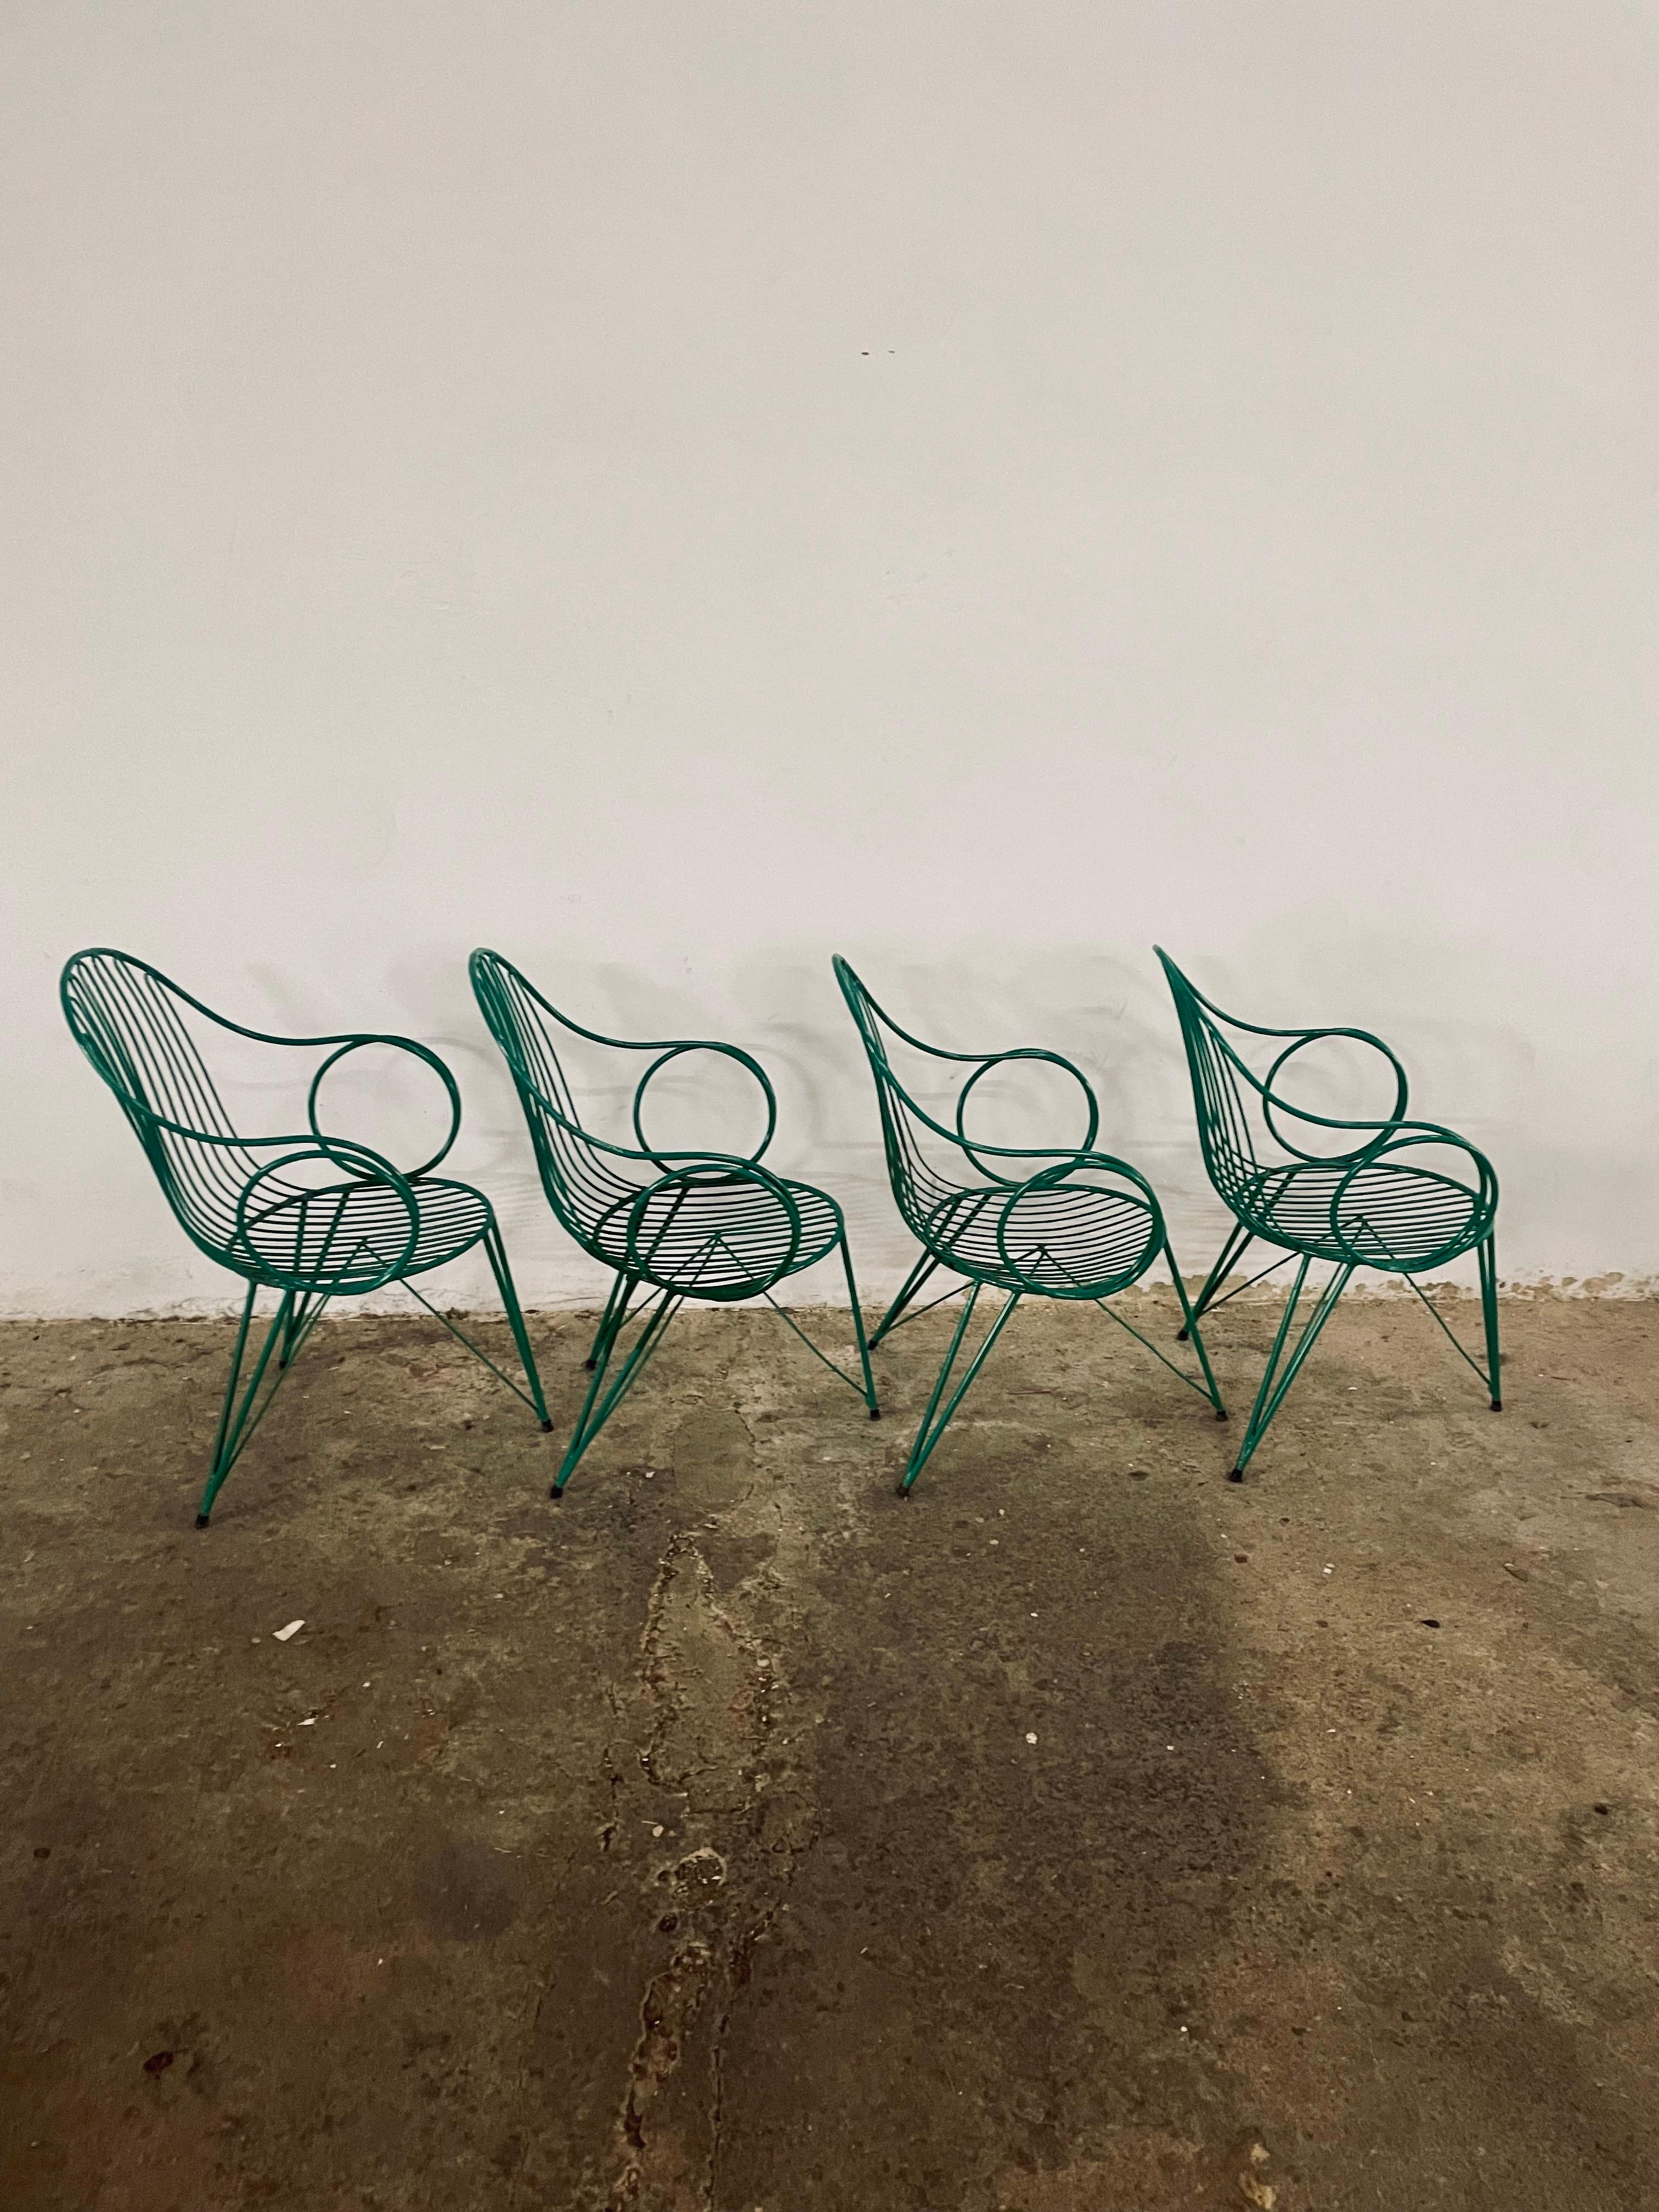 Satz von 4 seltenen französischen Vintage Metall Garten dreibeinige Stühle oder Esszimmerstühle, ursprüngliche Farbe, große Patina, 
Diese Stühle bleiben voll funktionsfähig, sie zeigen Alterserscheinungen durch Schrammen, Dellen, verblasste Lacke,